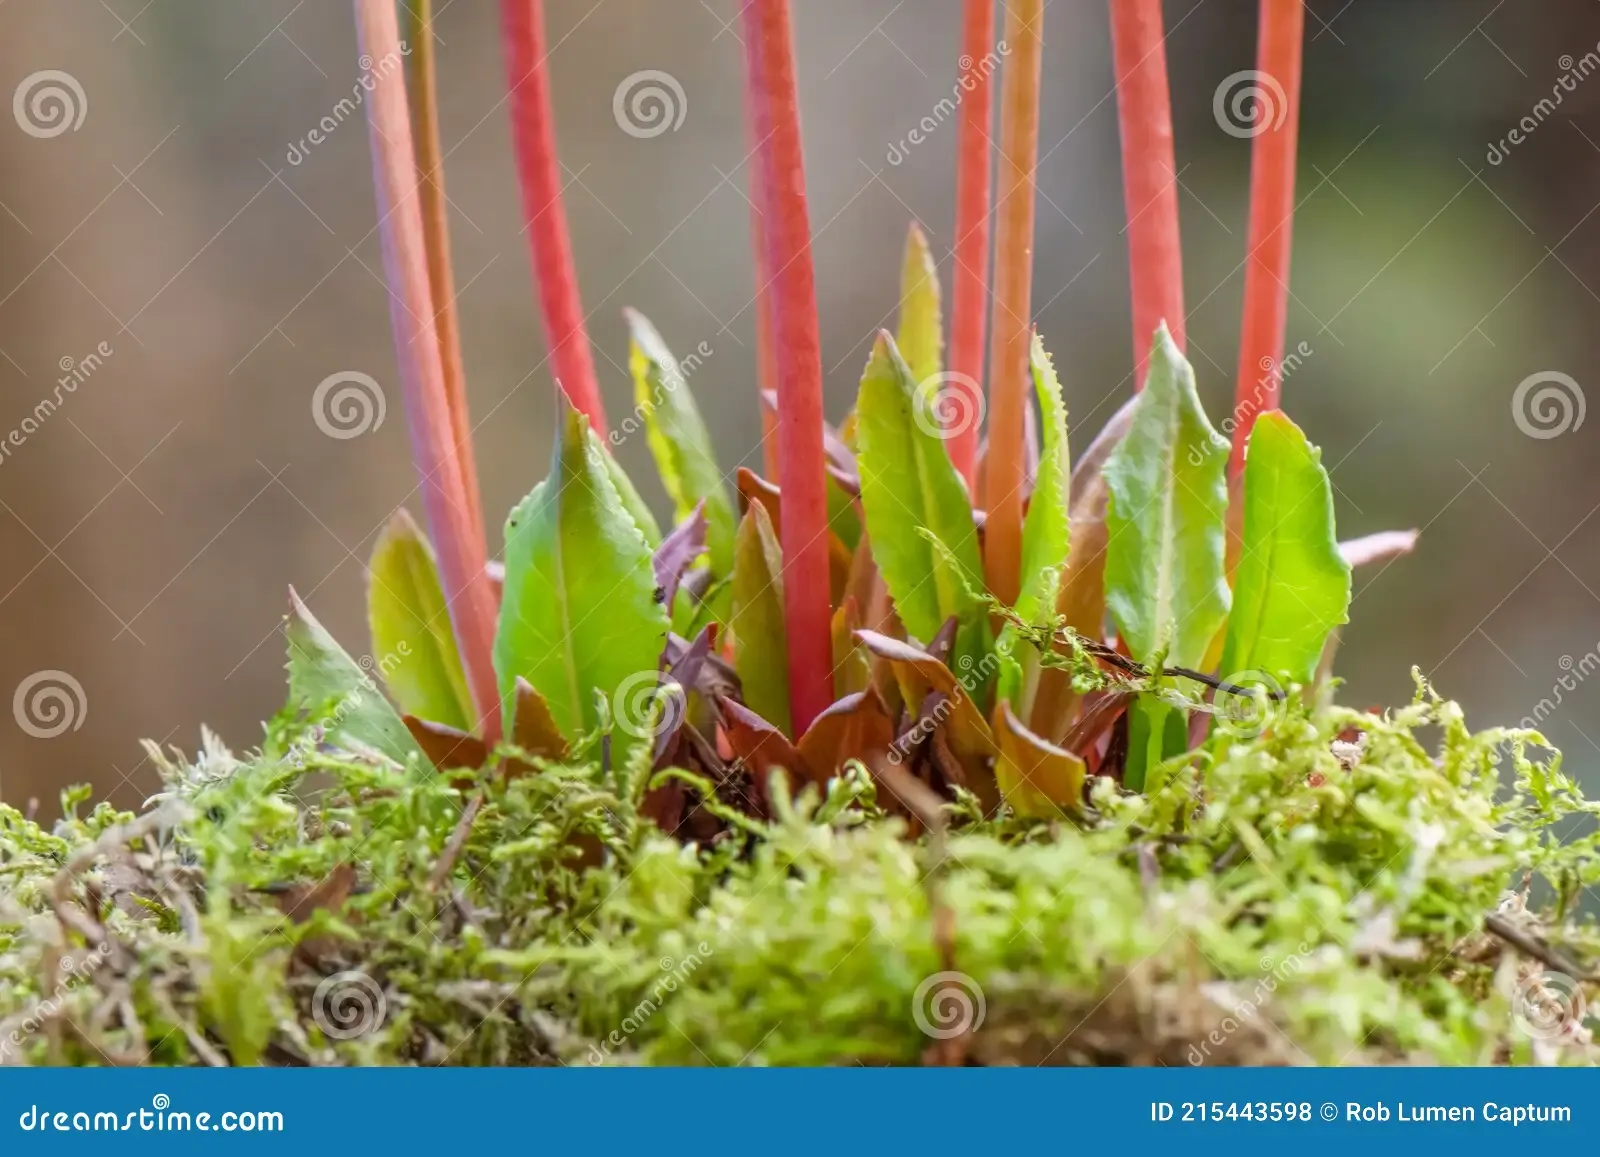 himalayan-meadow-primrose-primula-rosea-growing-moss-natural-habitat-himalayan-meadow-primrose-primula-rosea-isa-herbaceous-215443598.jpg